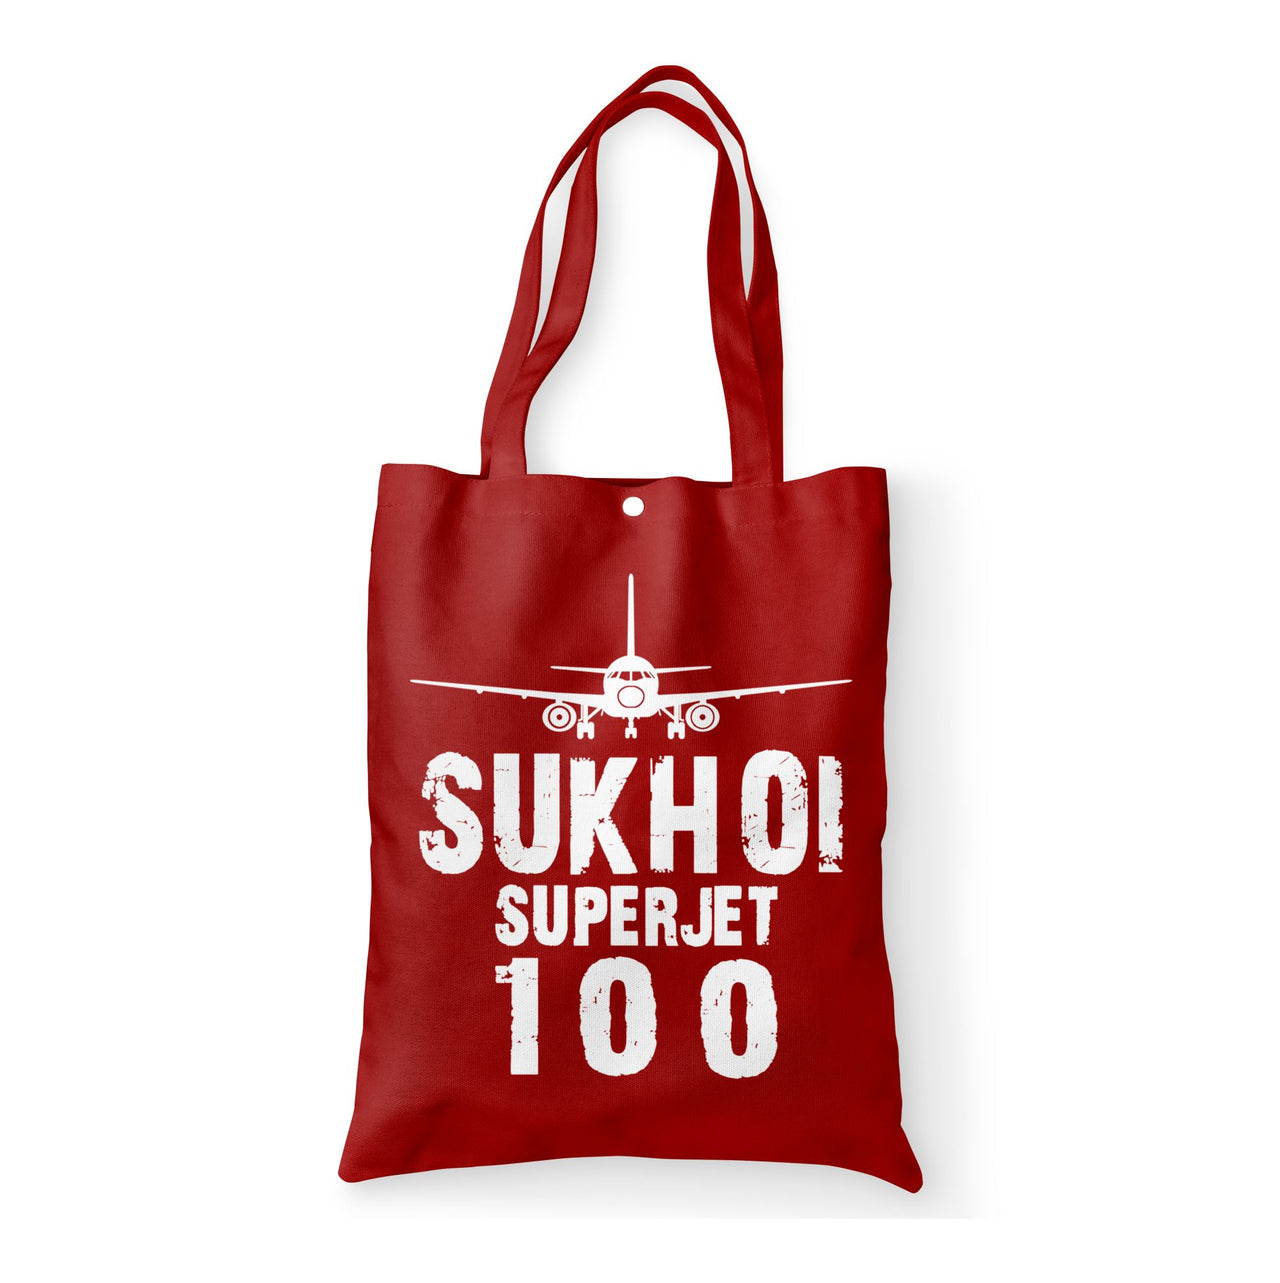 Sukhoi Superjet 100 & Plane Designed Tote Bags